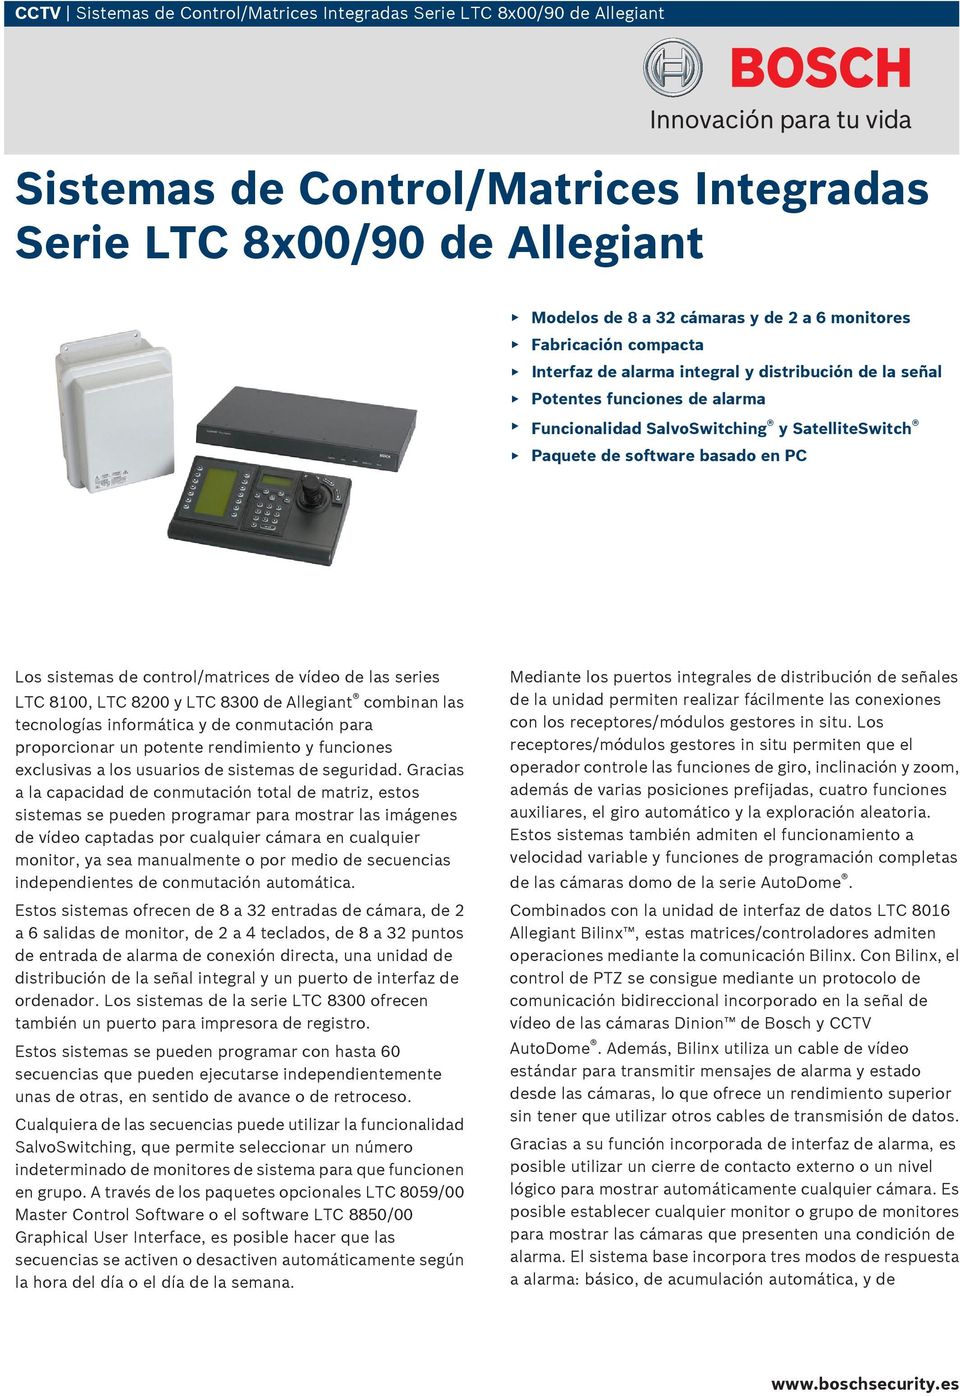 control/matrices de vídeo de las series LTC 81, LTC 82 y LTC 83 de Allegiant combinan las tecnologías informática y de conmutación para proporcionar un potente rendimiento y funciones exclusivas a